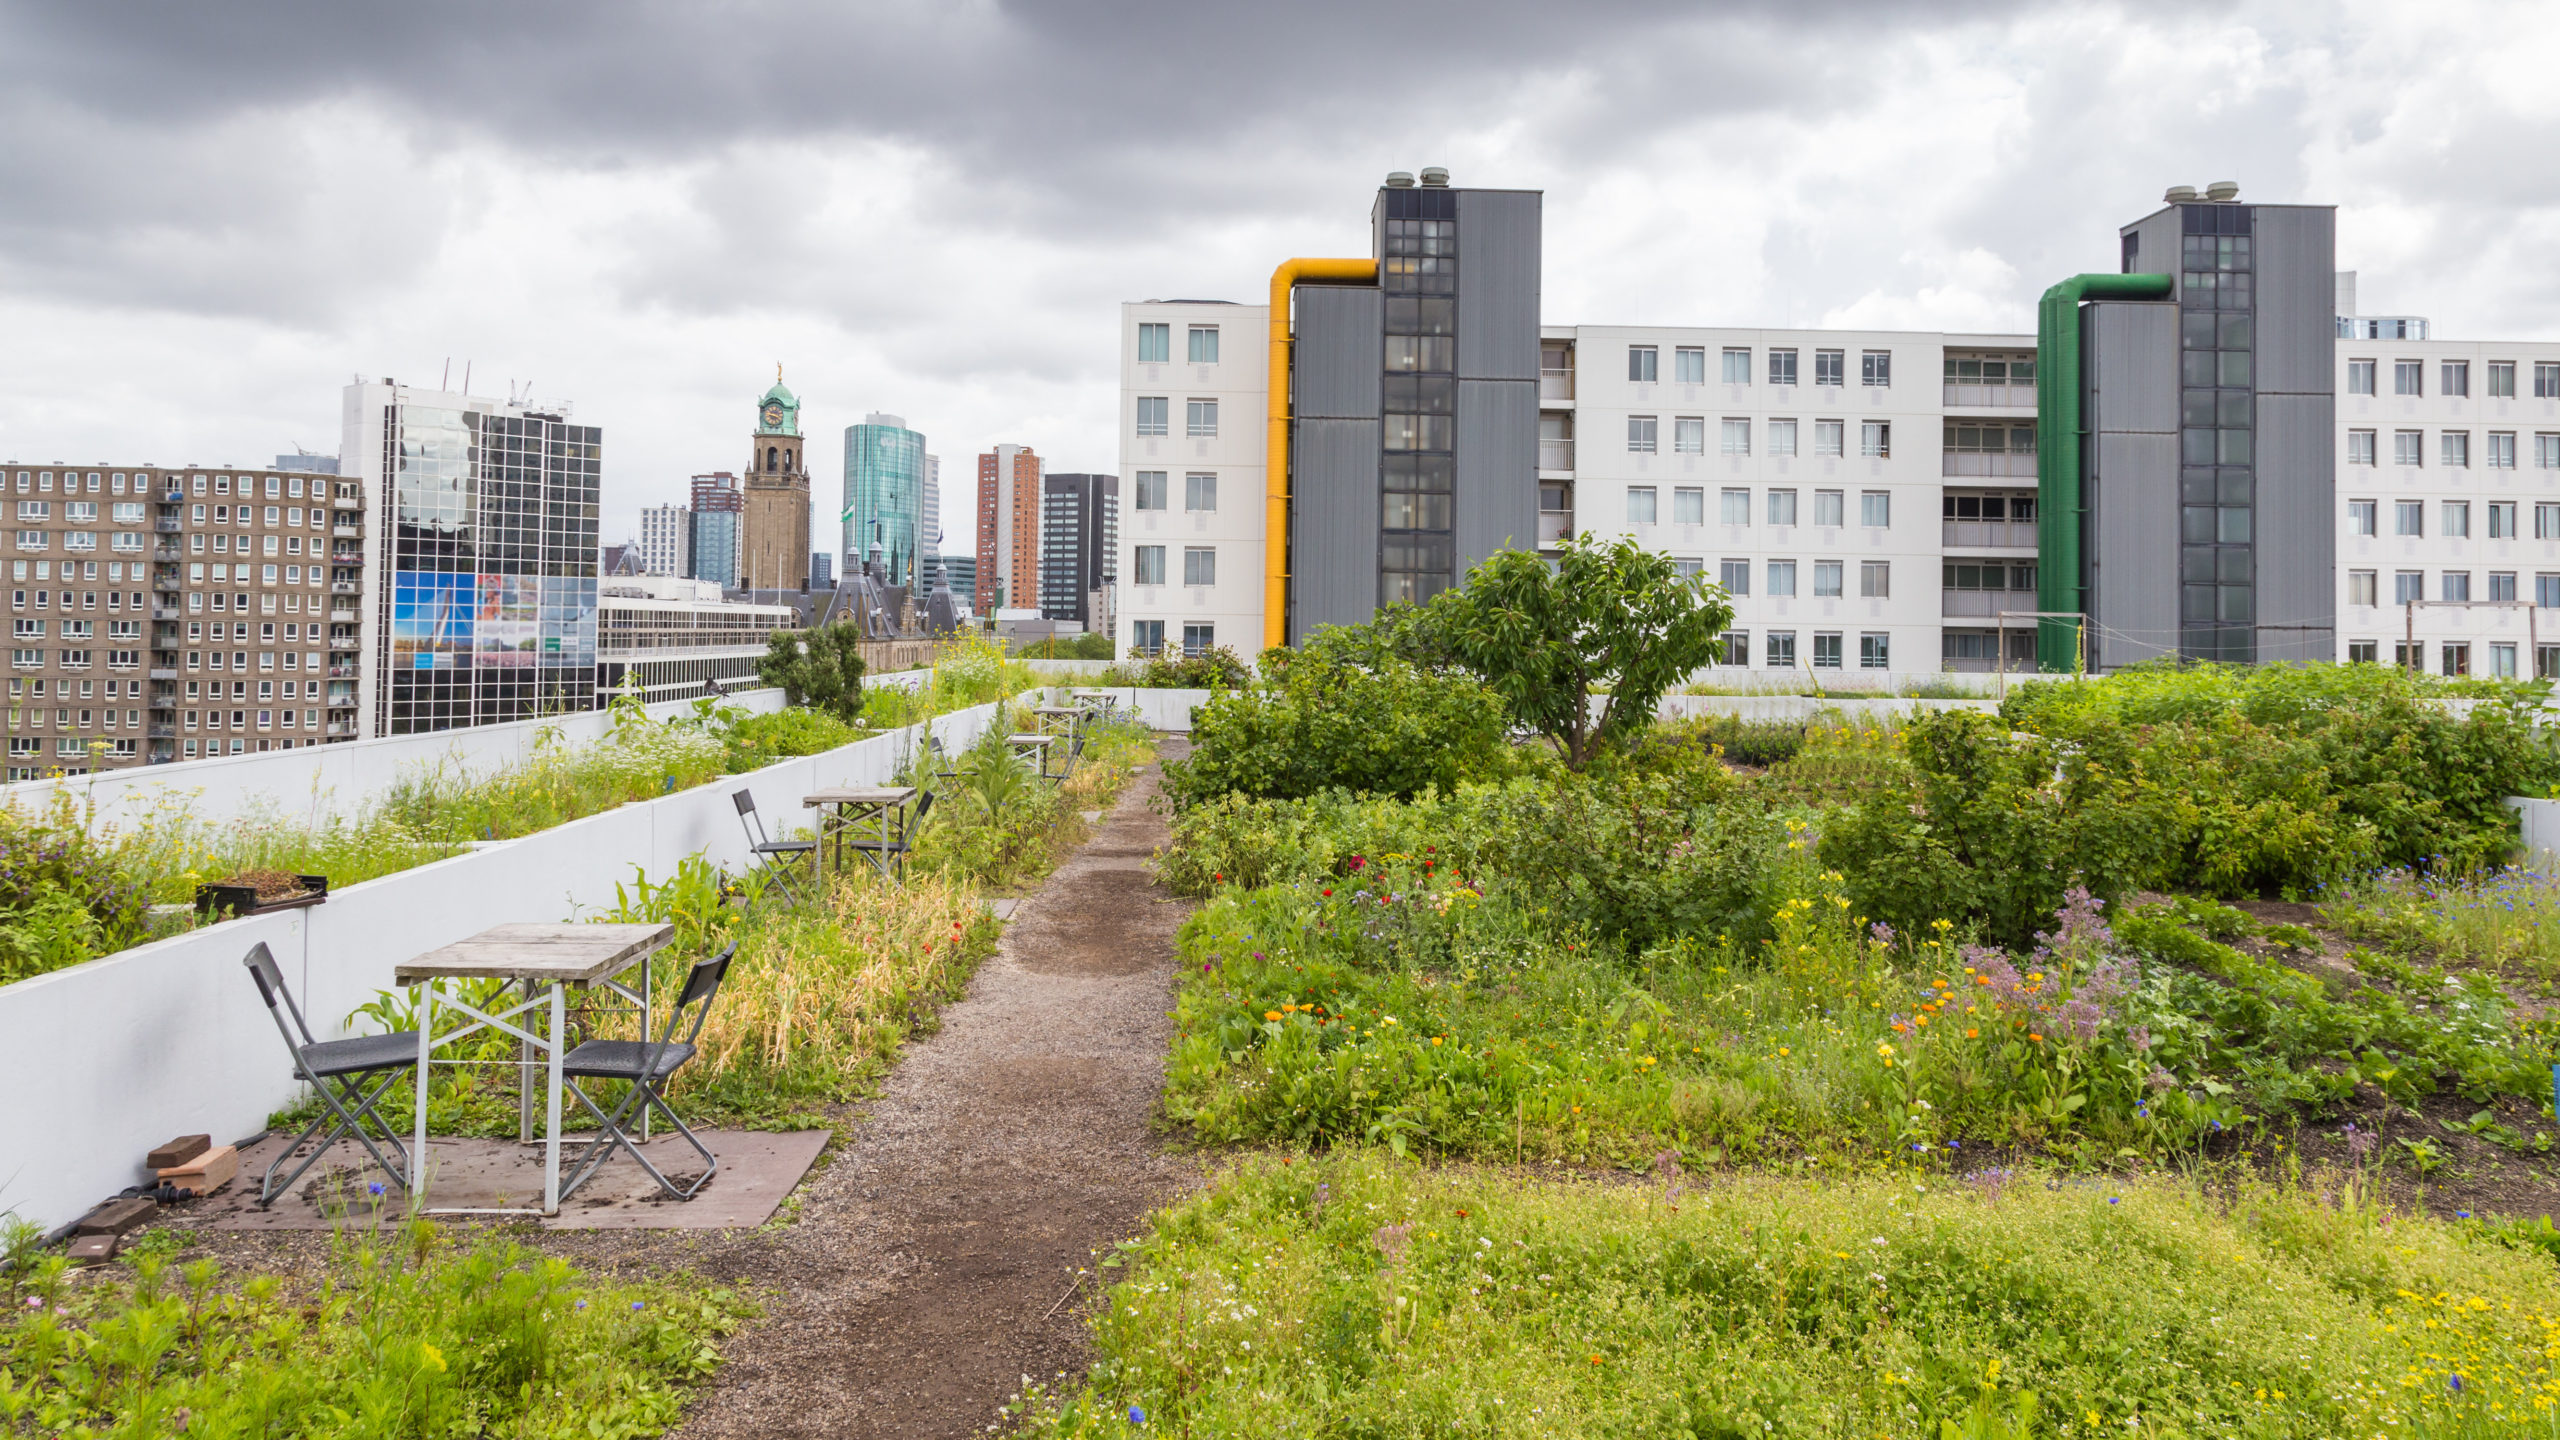 An urban rooftop garden